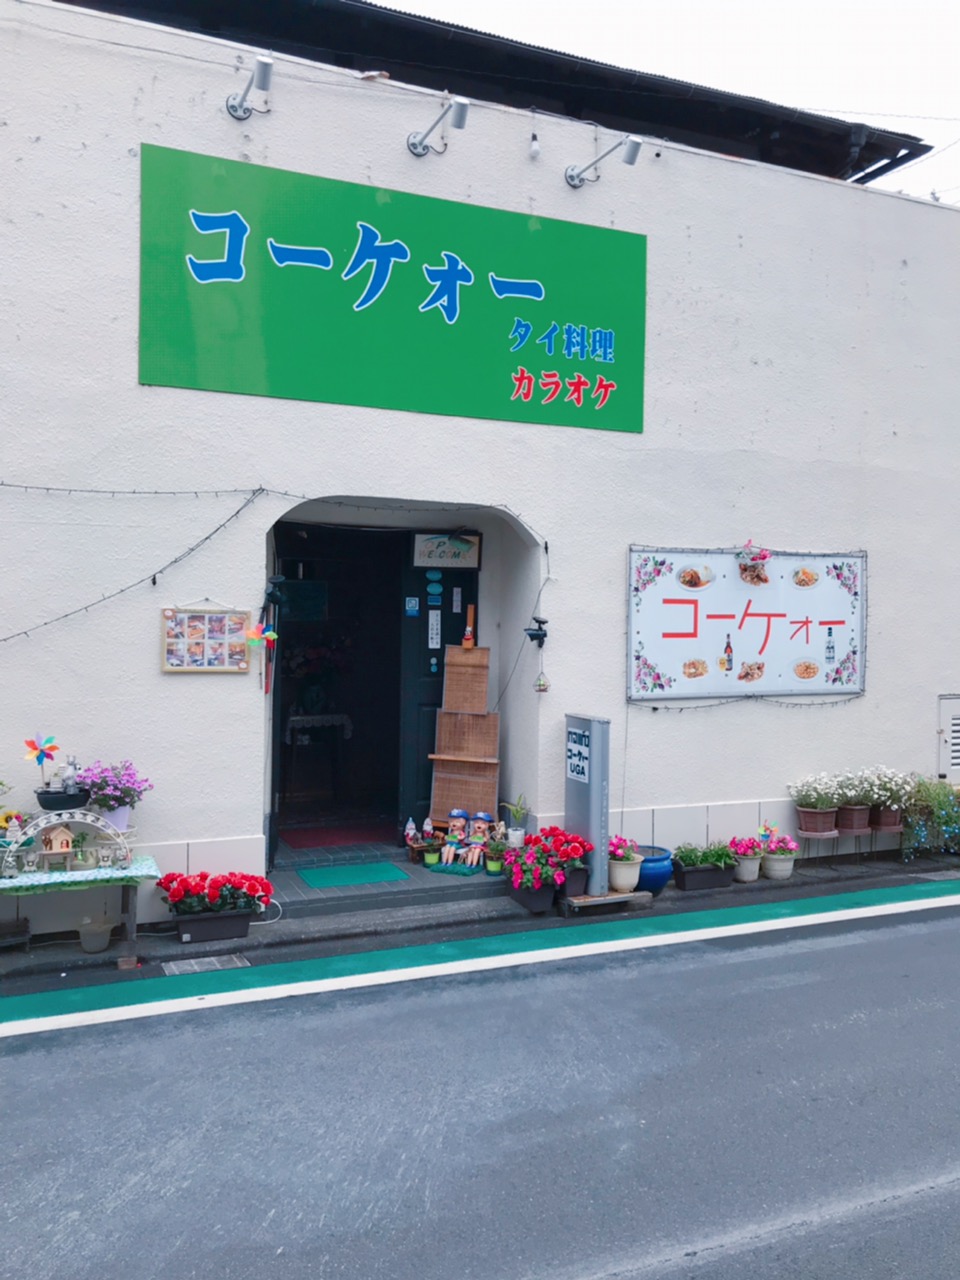 伊豆長岡温泉街の中央にあります。広くて多くの皆様が楽しめるお店になっています。